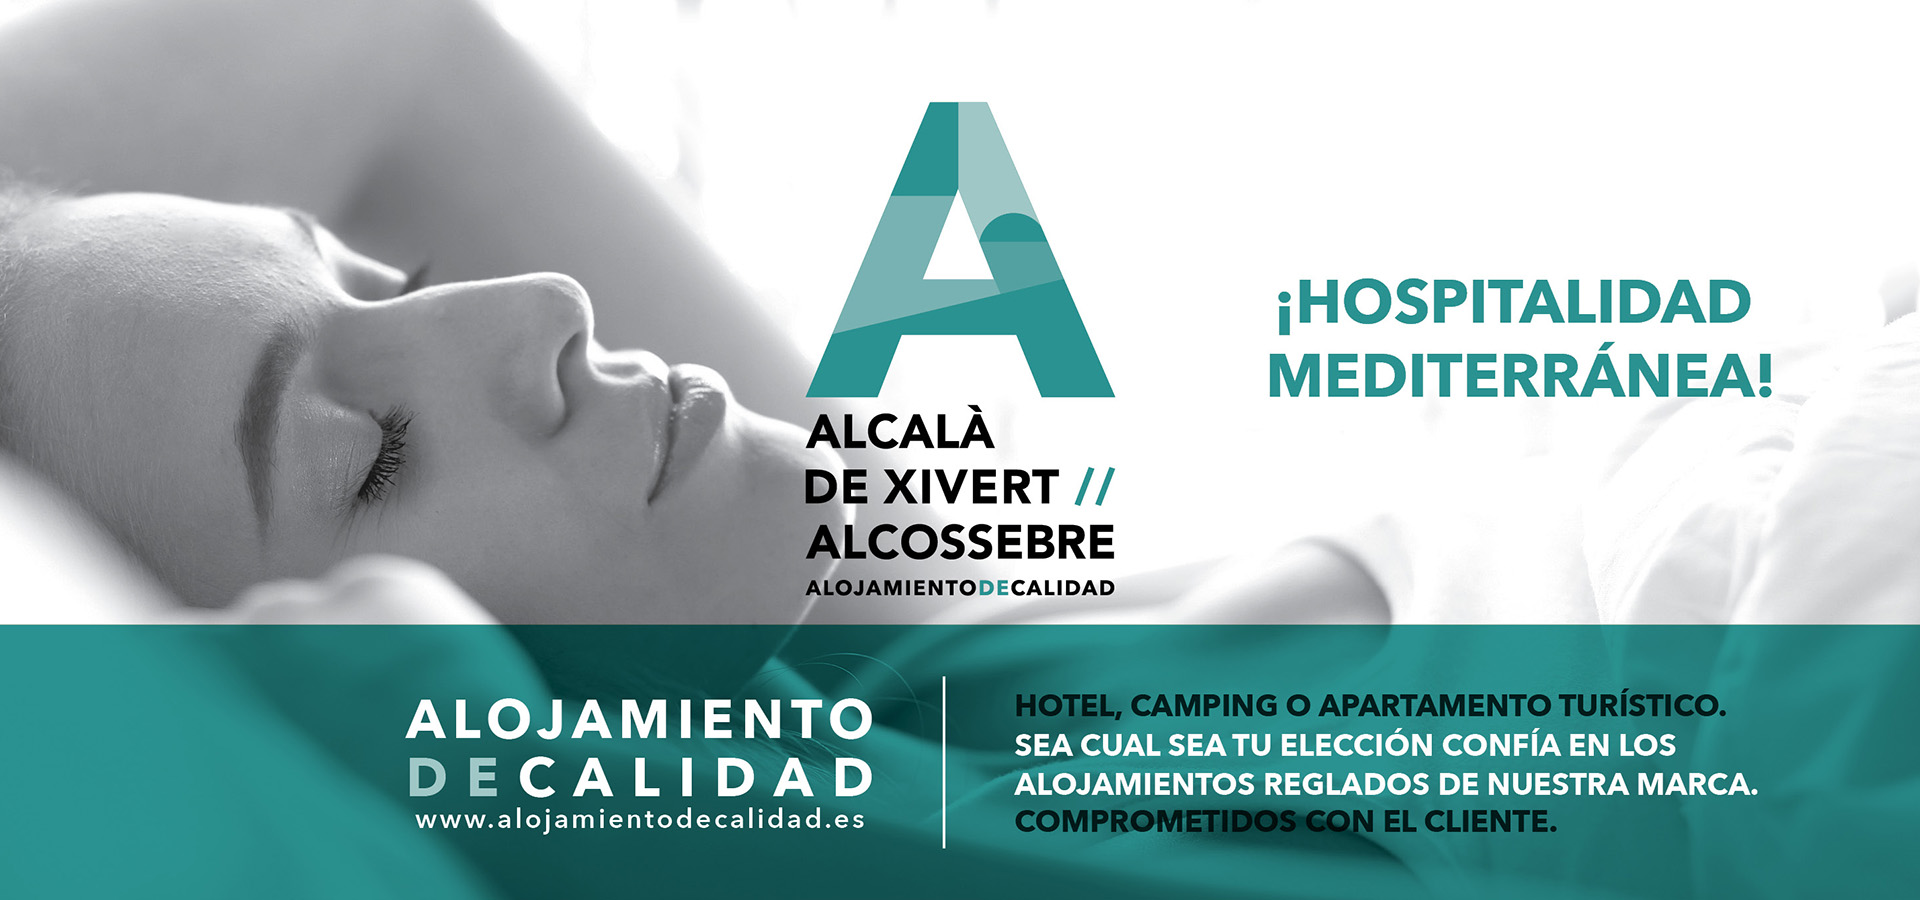 ASOCIACIÓN ALCALÀ-ALCOSSEBRE. ALOJAMIENTO DE CALIDAD